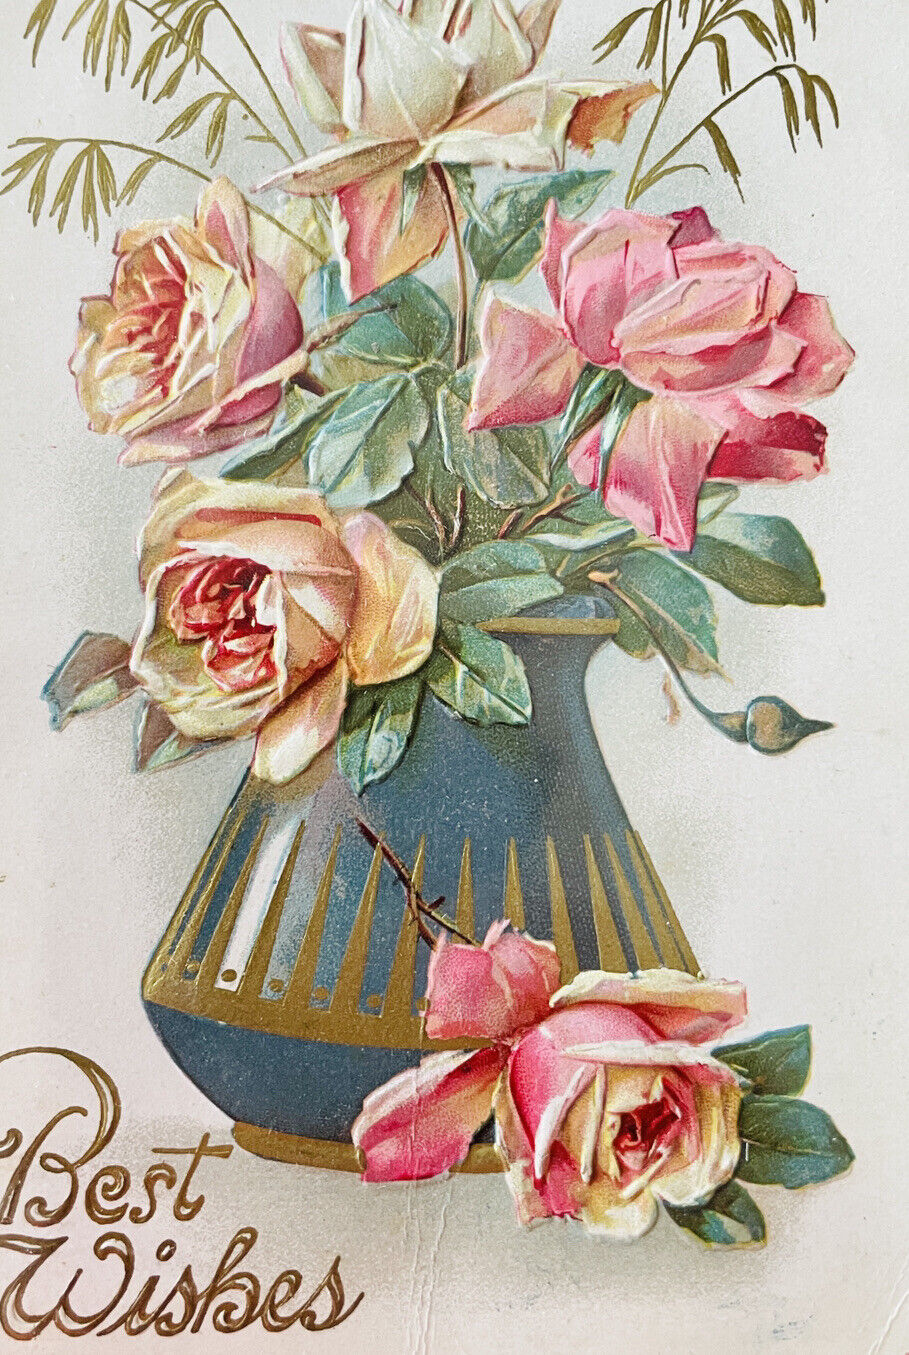 Antique 1900s Rose Vase Best Wishes Postcard Vintage Raised